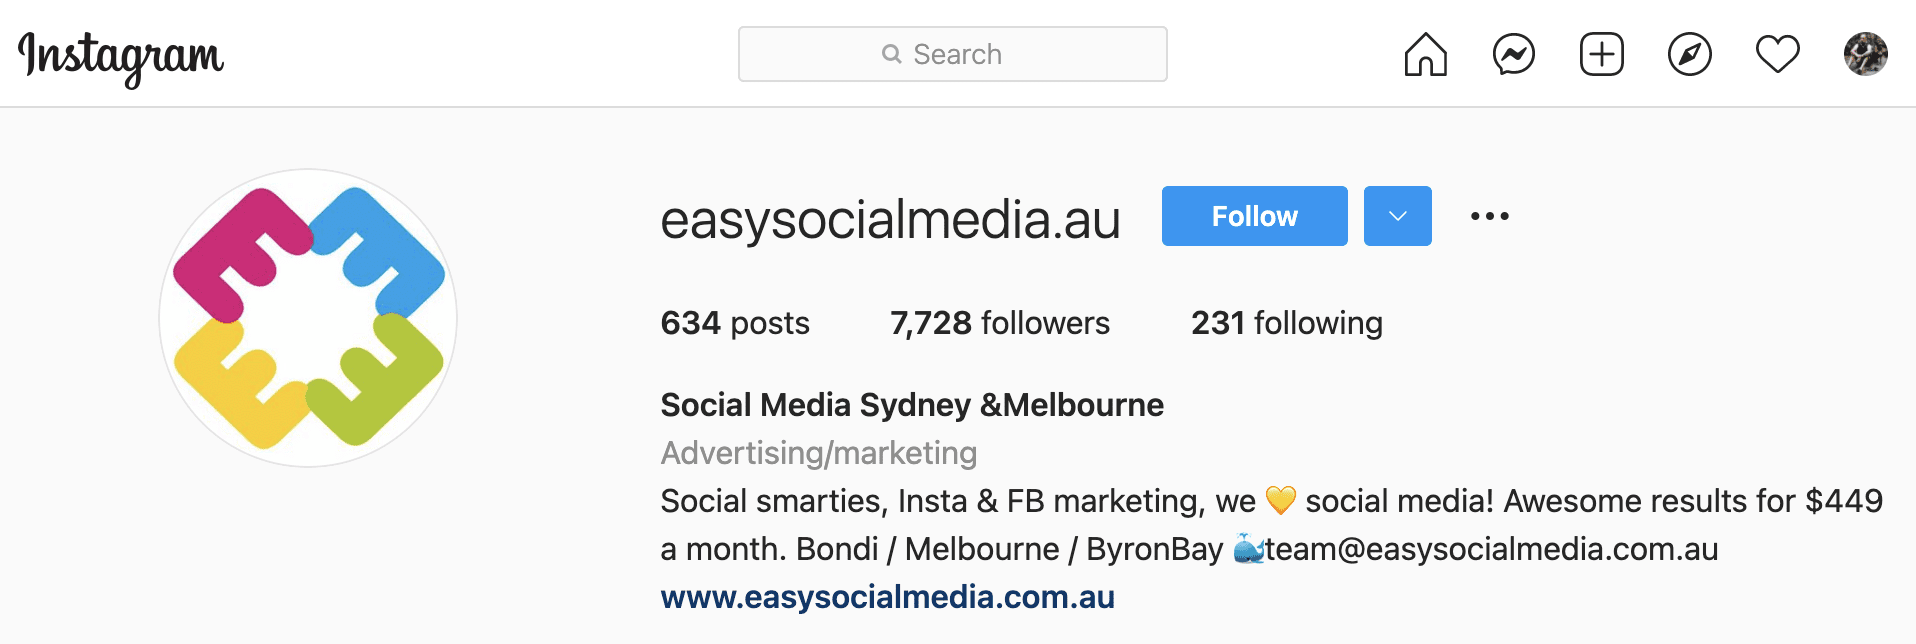 Instagram Advertising Australia fishing for new clients on social media